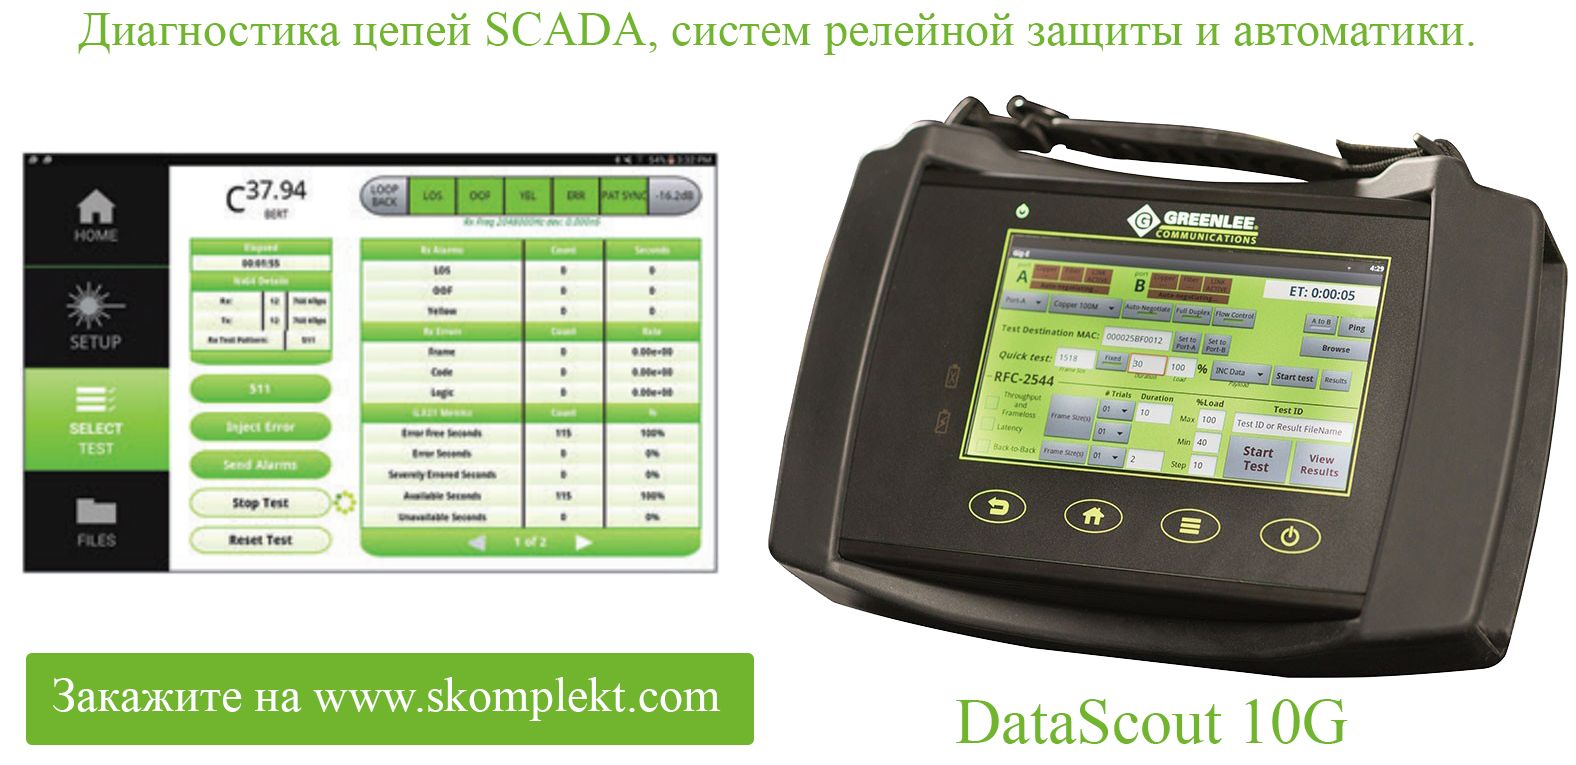 Диагностика цепей SCADA и релейной защиты – новые возможности Greenlee DataScout 10G